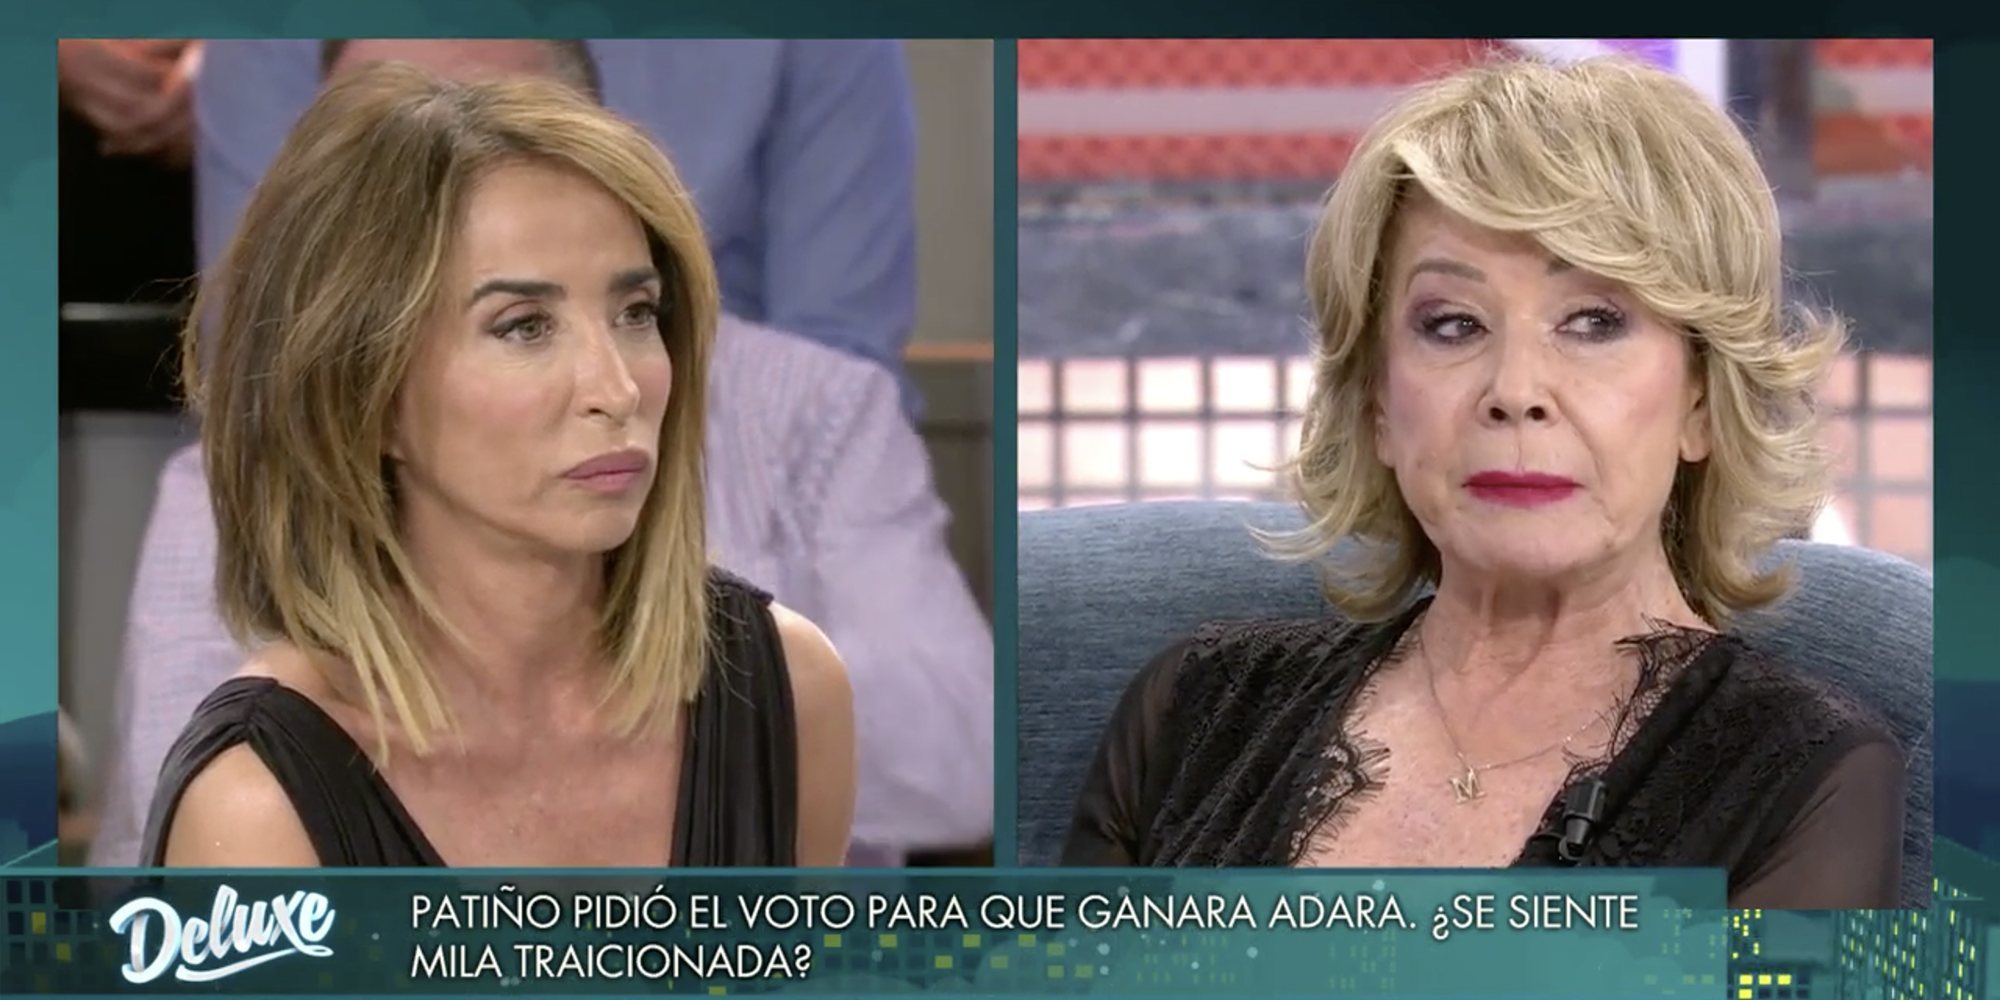 María Patiño y Mila Ximénez aclaran sus diferencias en 'Sábado Deluxe': "Hubiera pedido que ganara mi amiga"